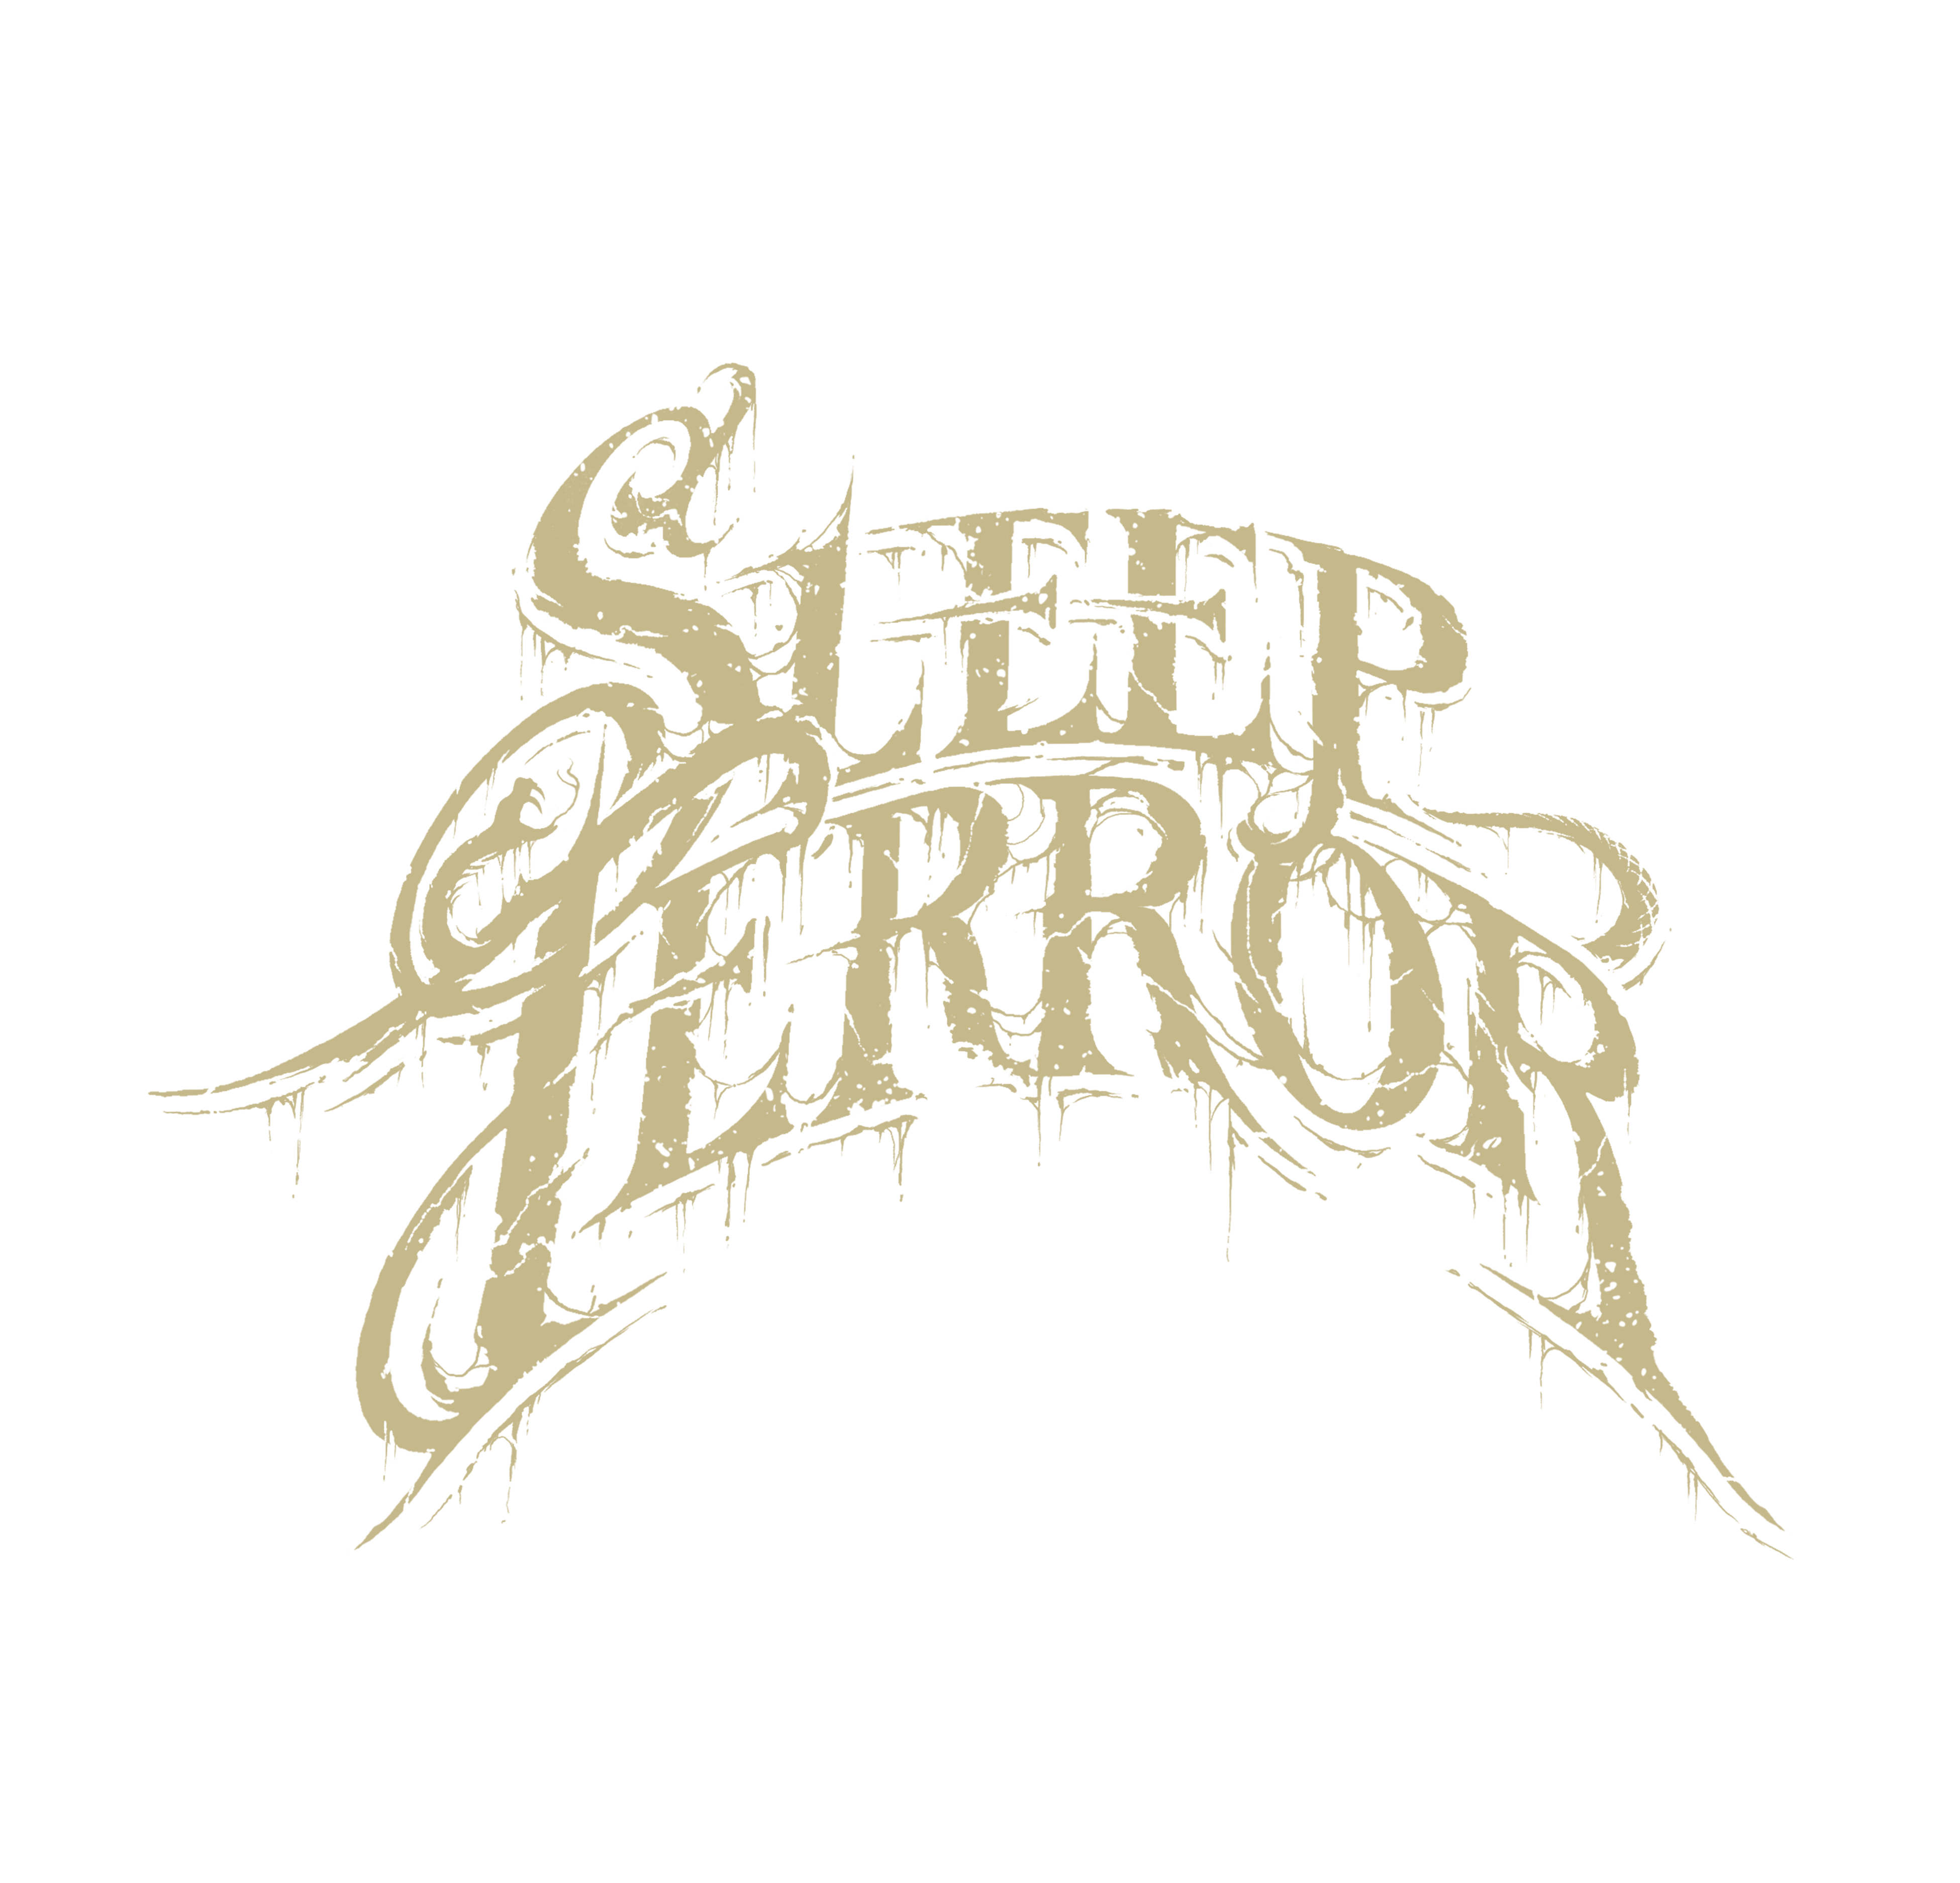 Sleep Terror